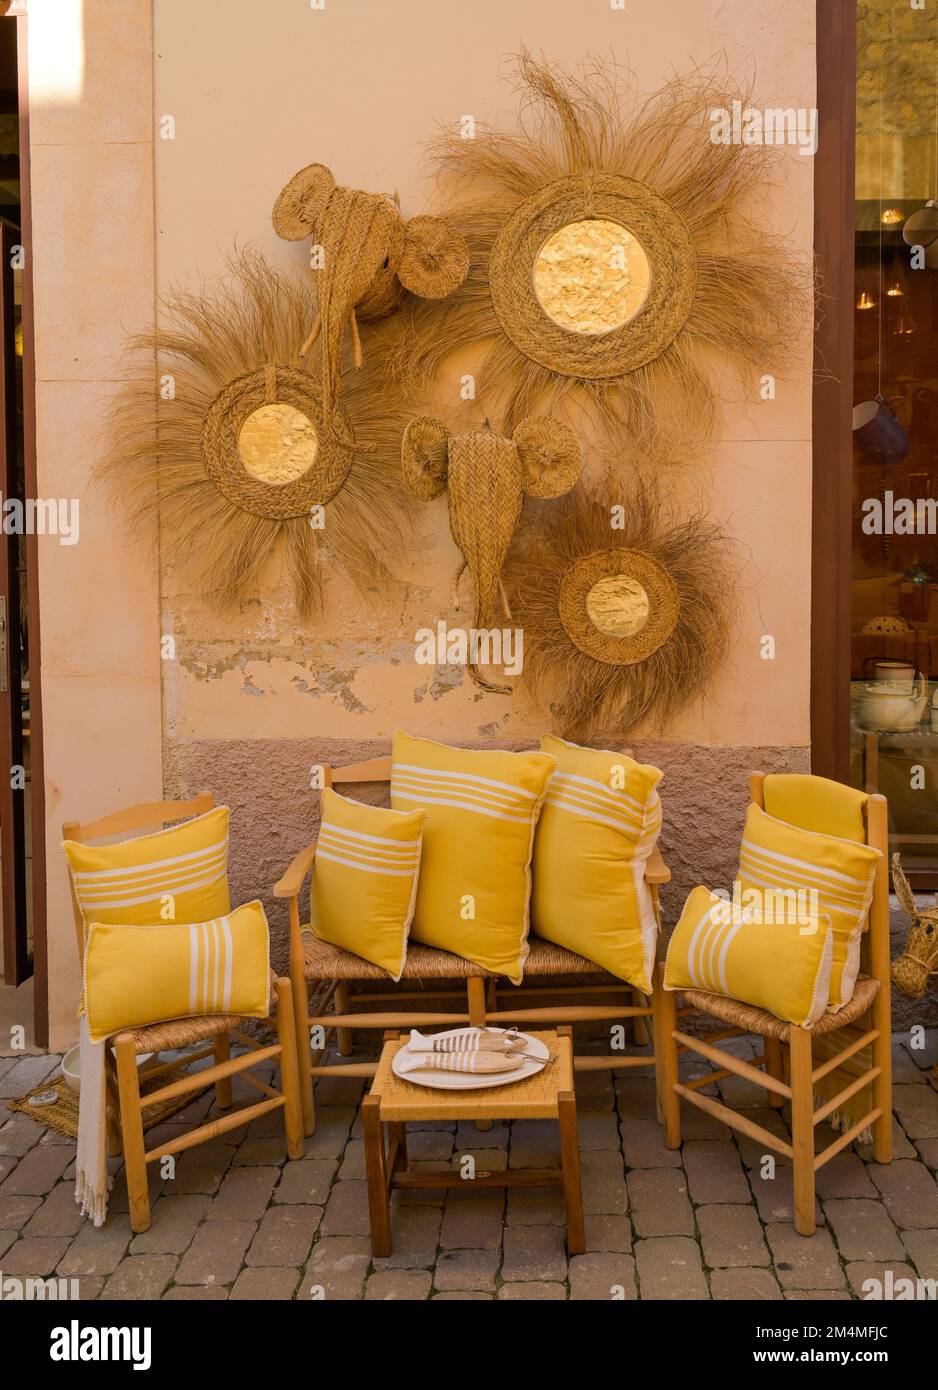 Geschäft, einheimische Möbel und Flechtwaren, Arta, Mallorca, Spanien Stock Photo